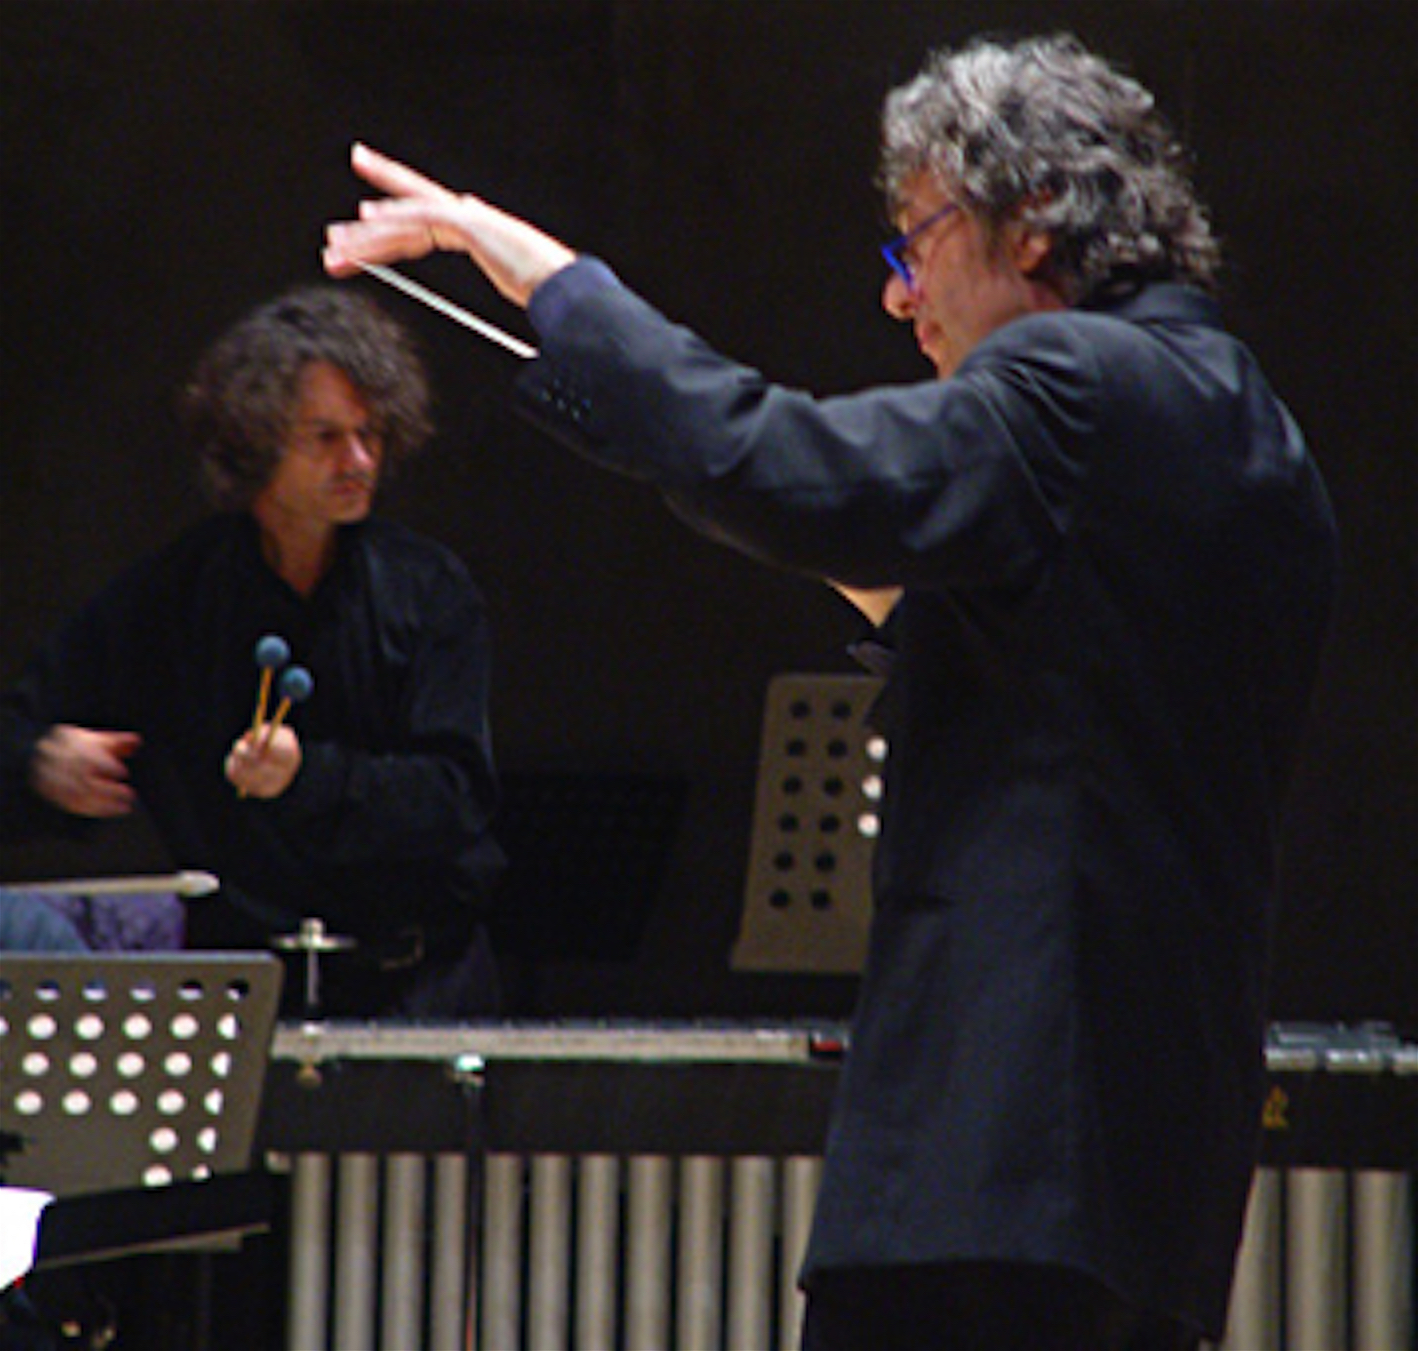 THIERRY MIROGLIO E ALBERTO CAPRIOLI, PHOTO SETTEMBRE MUSICA, 2006